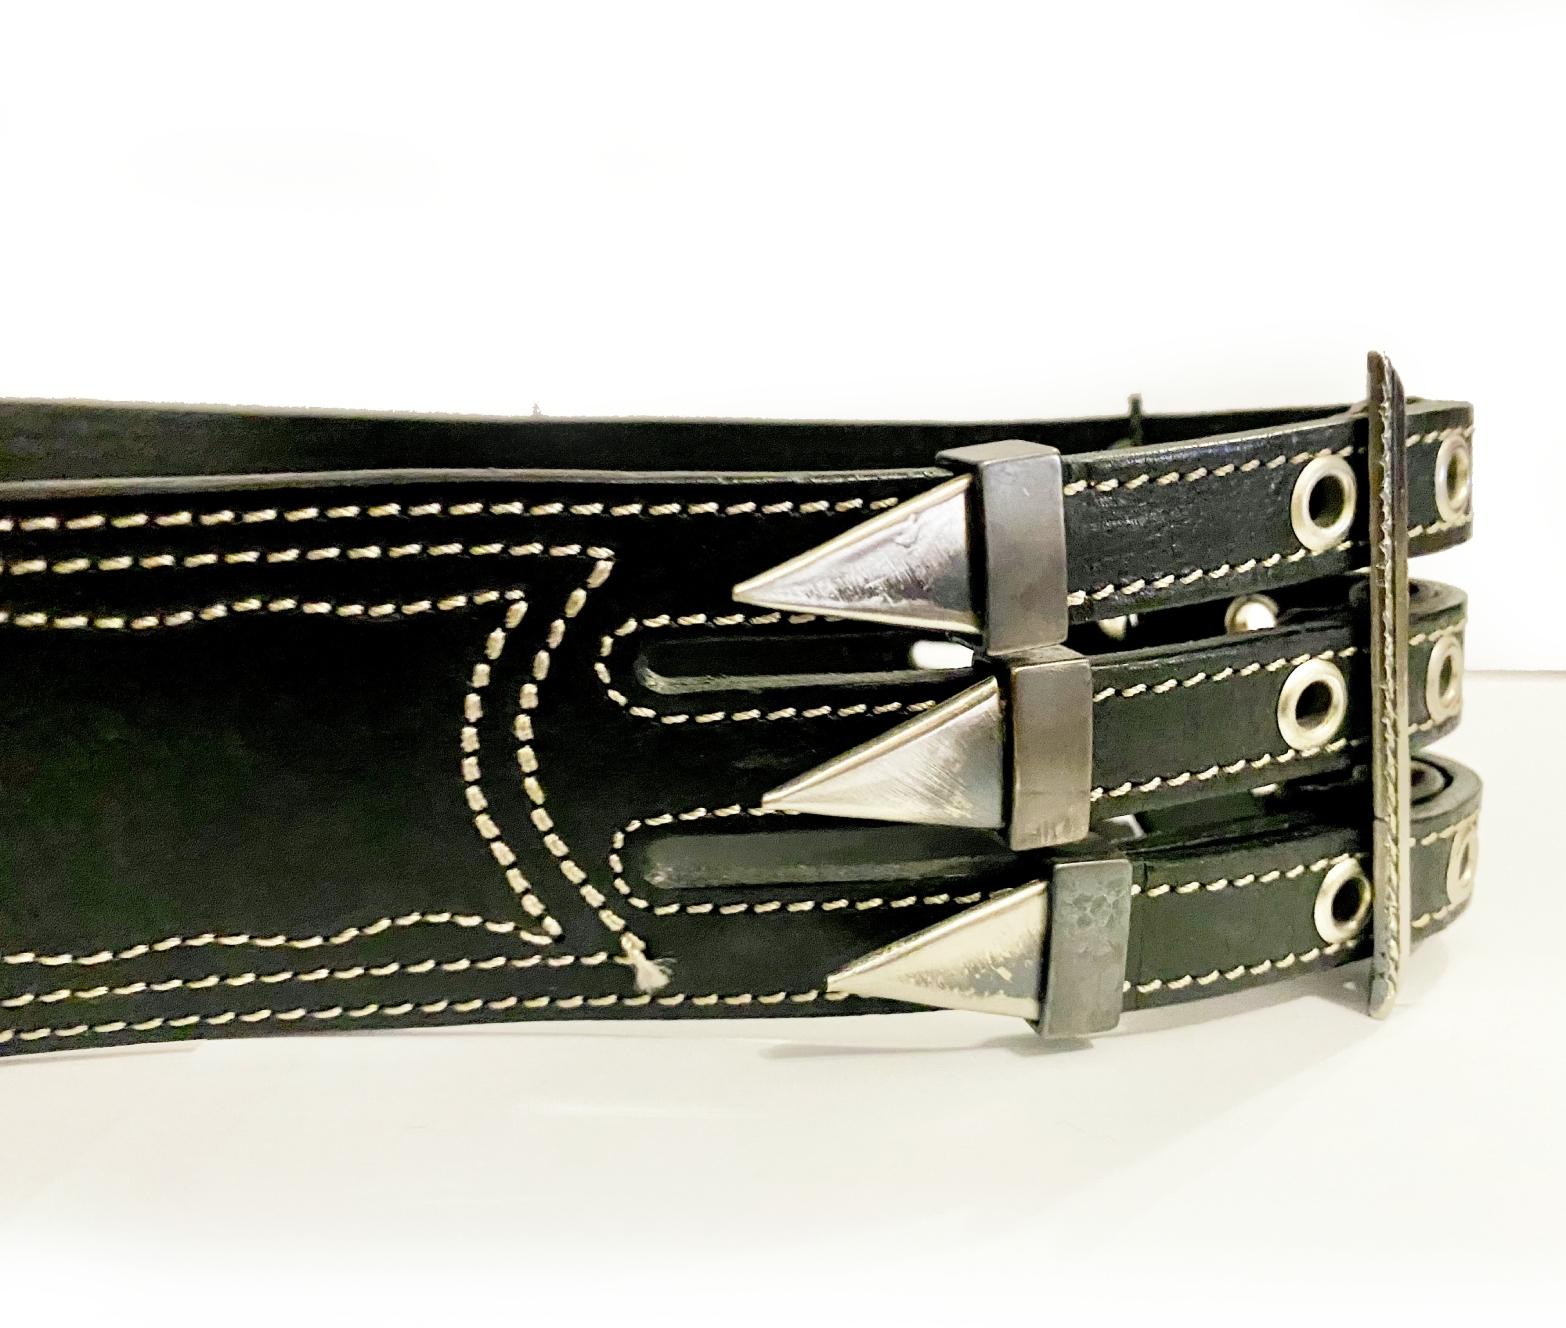 Entdecken Sie dauerhafte Raffinesse mit dem opulenten 1990er Gianfranco Ferre Black Leather Metal Spike Belt. Umhüllt von einem schimmernden Doppelspitzenmuster, verziert mit silbern schimmernden Metallspitzen, strahlt dieser Gürtel Exklusivität und